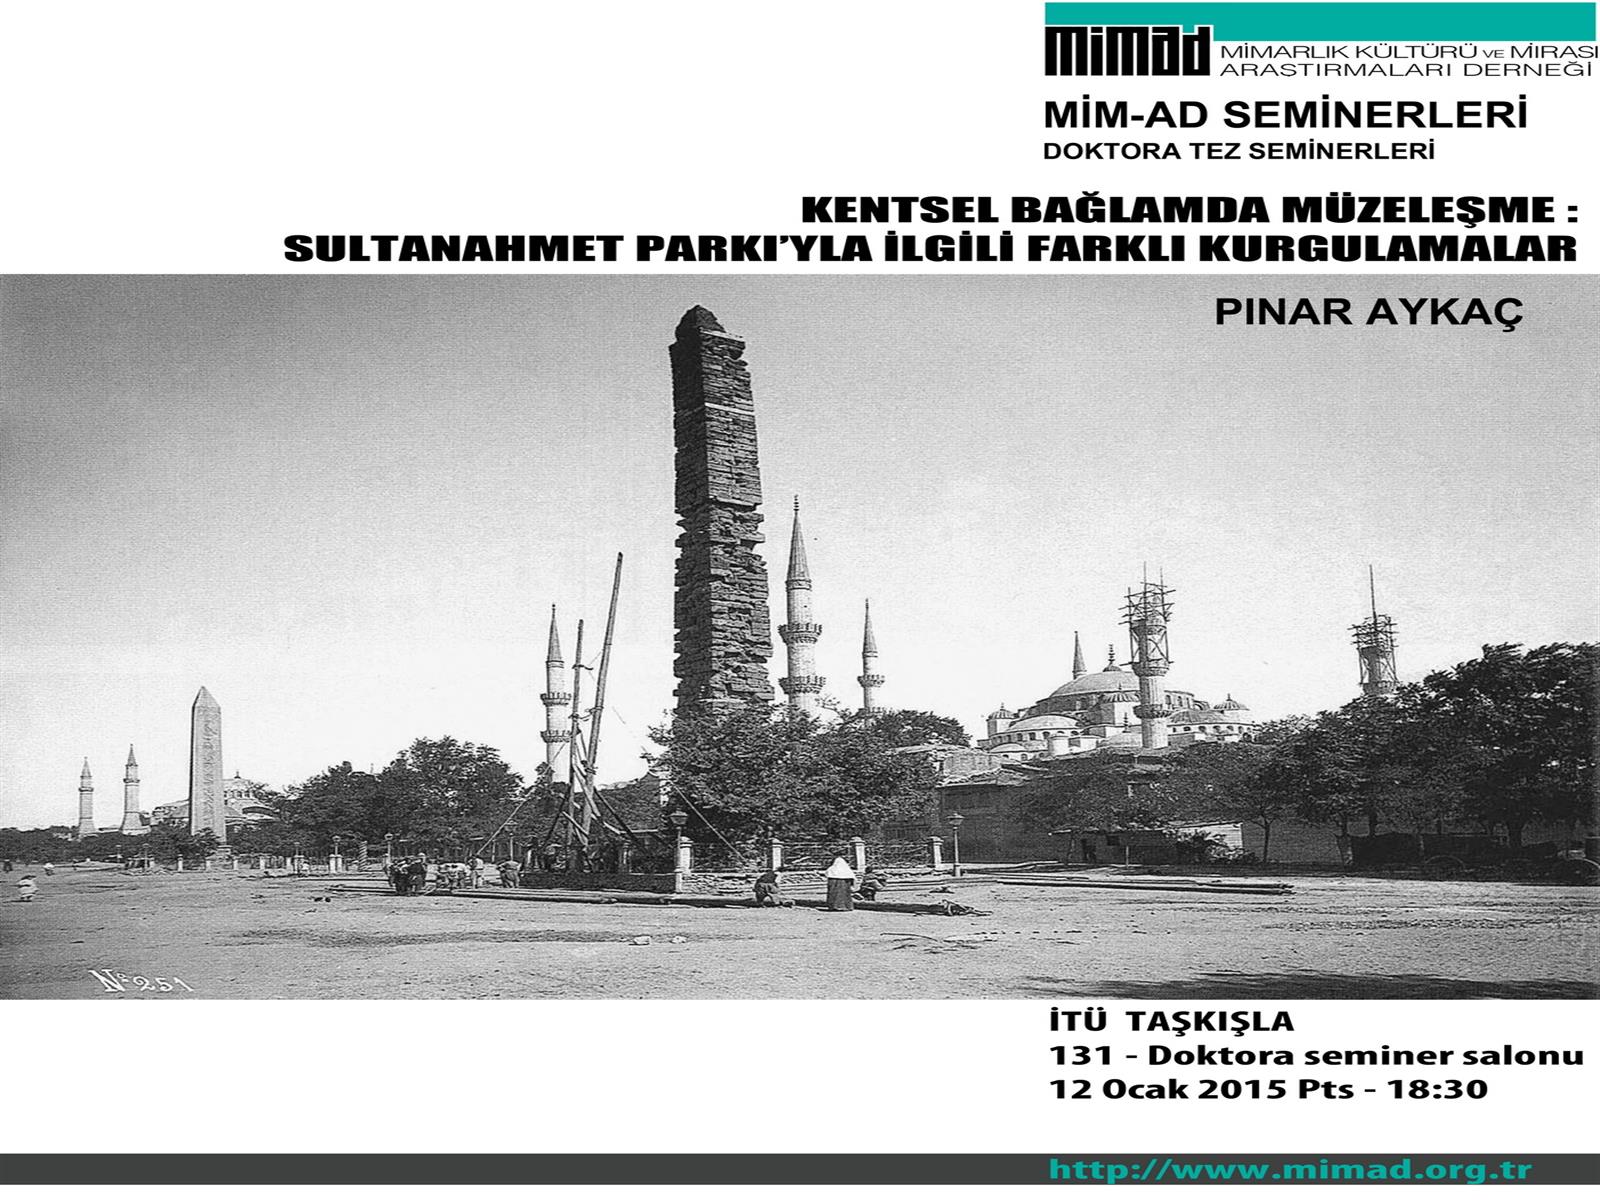 Pınar Aykaç semineri : Kentsel Bağlamda Müzeleşme: Sultanahmet Arkeoloji Parkı’yla İlgili Farklı Kurgulamalar